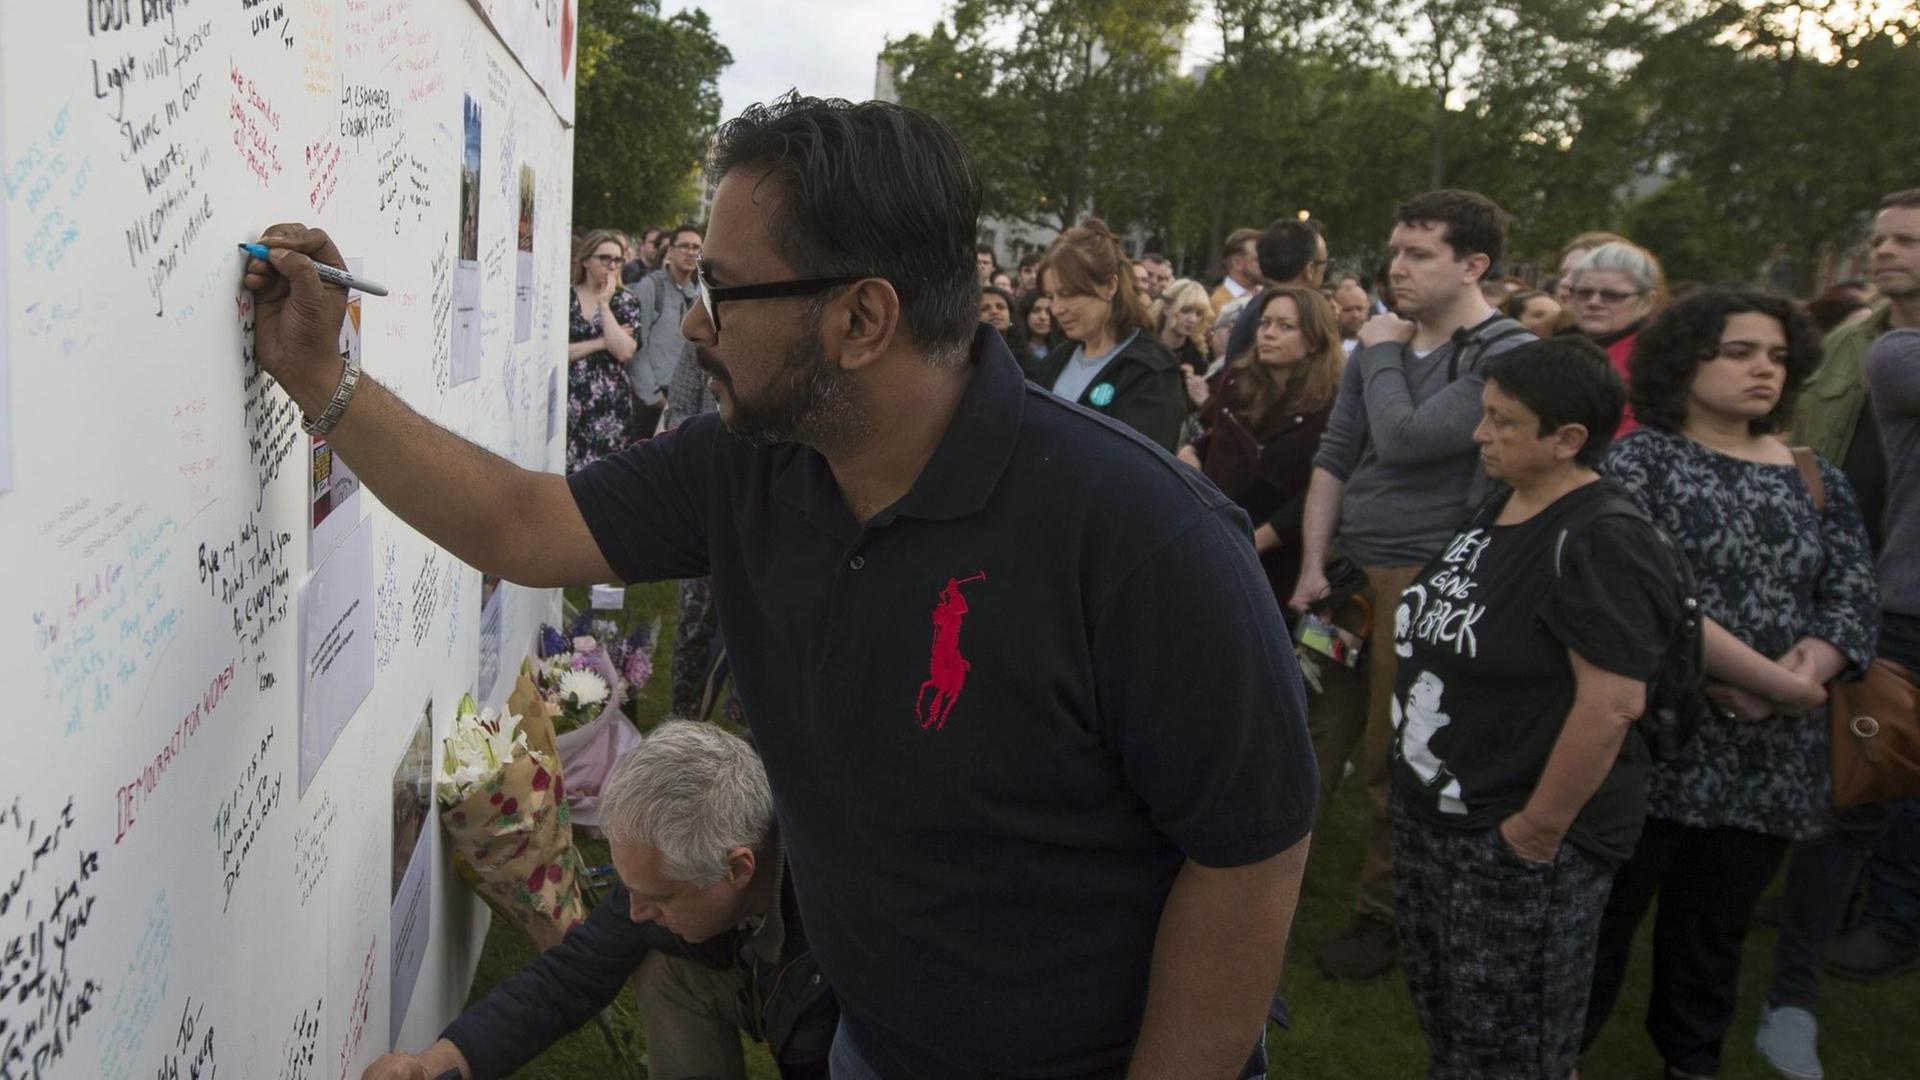 Trauernde schreiben bei einer Andacht in London Botschaften an eine Wand, die an die nach einem Attentat verstorbene britische Labour-Abgeordnete Jo Cox erinnern soll.